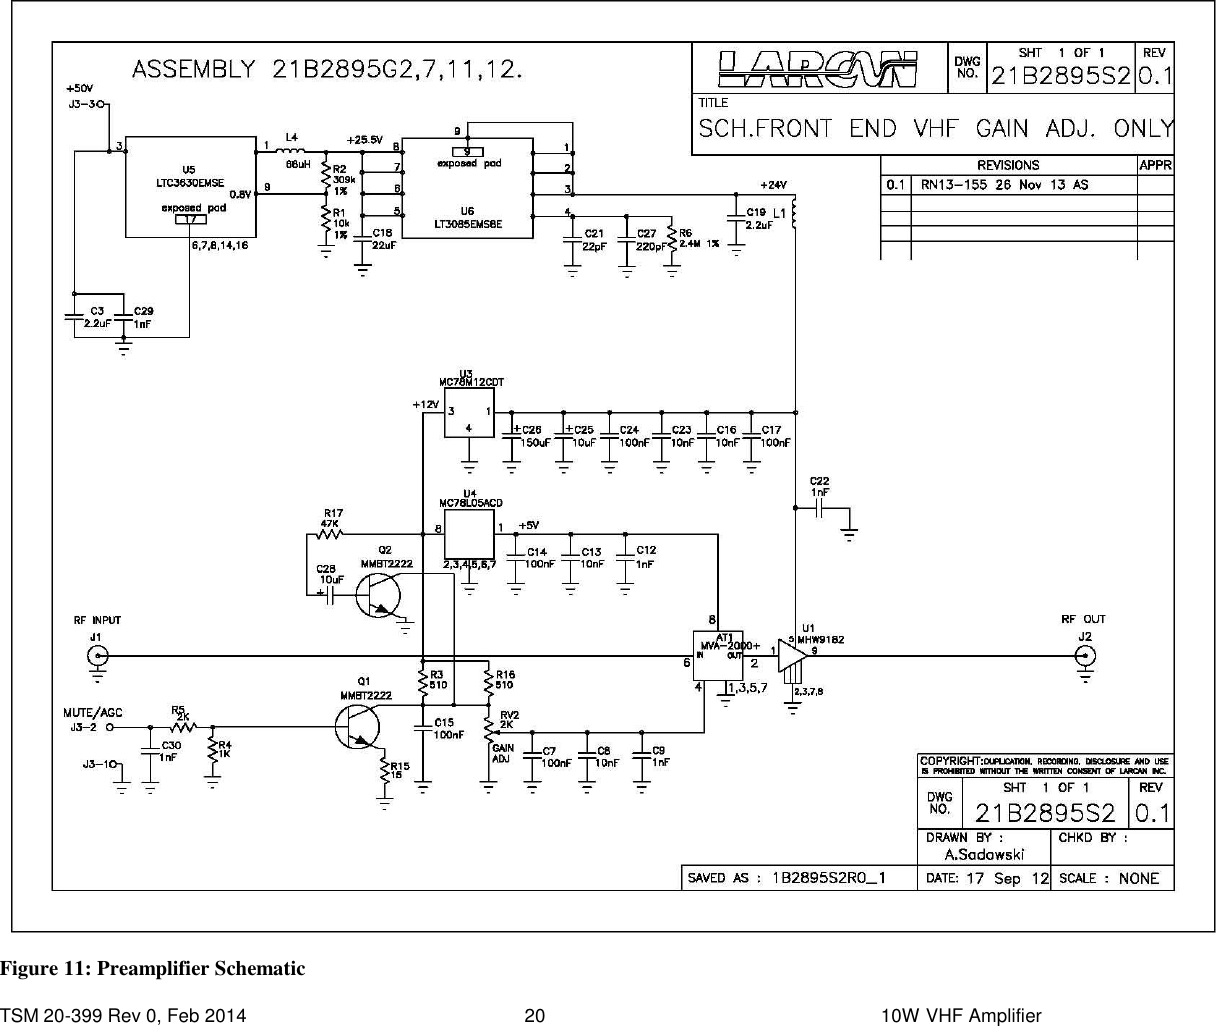  TSM 20-399 Rev 0, Feb 2014  20    10W VHF Amplifier  Figure 11: Preamplifier Schematic 